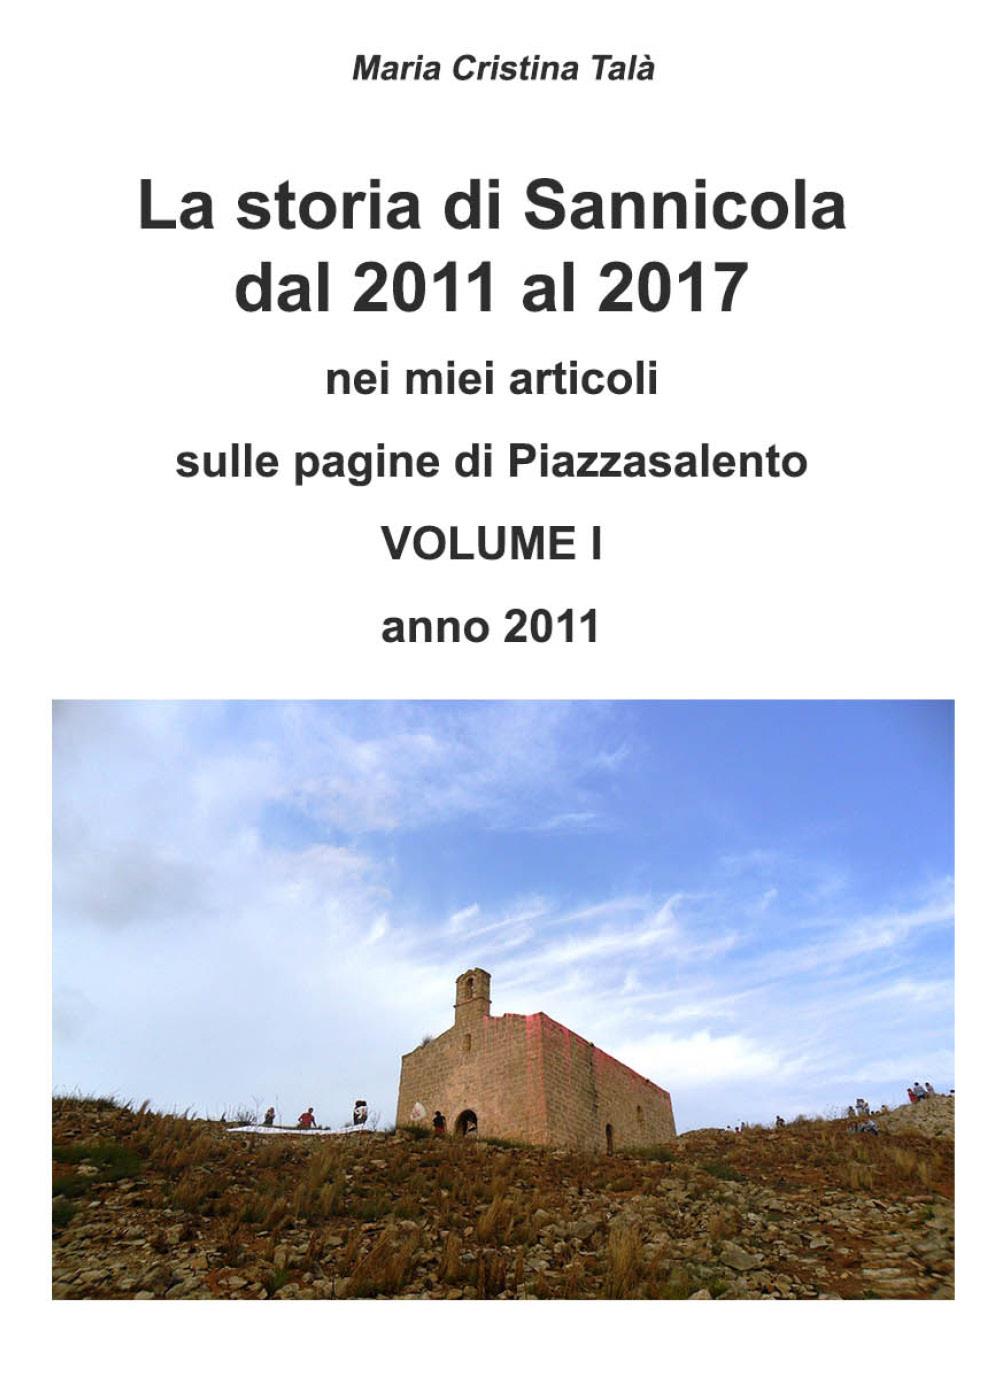 La storia di Sannicola dal 2011 al 2017 -  vol 1 anno 2011